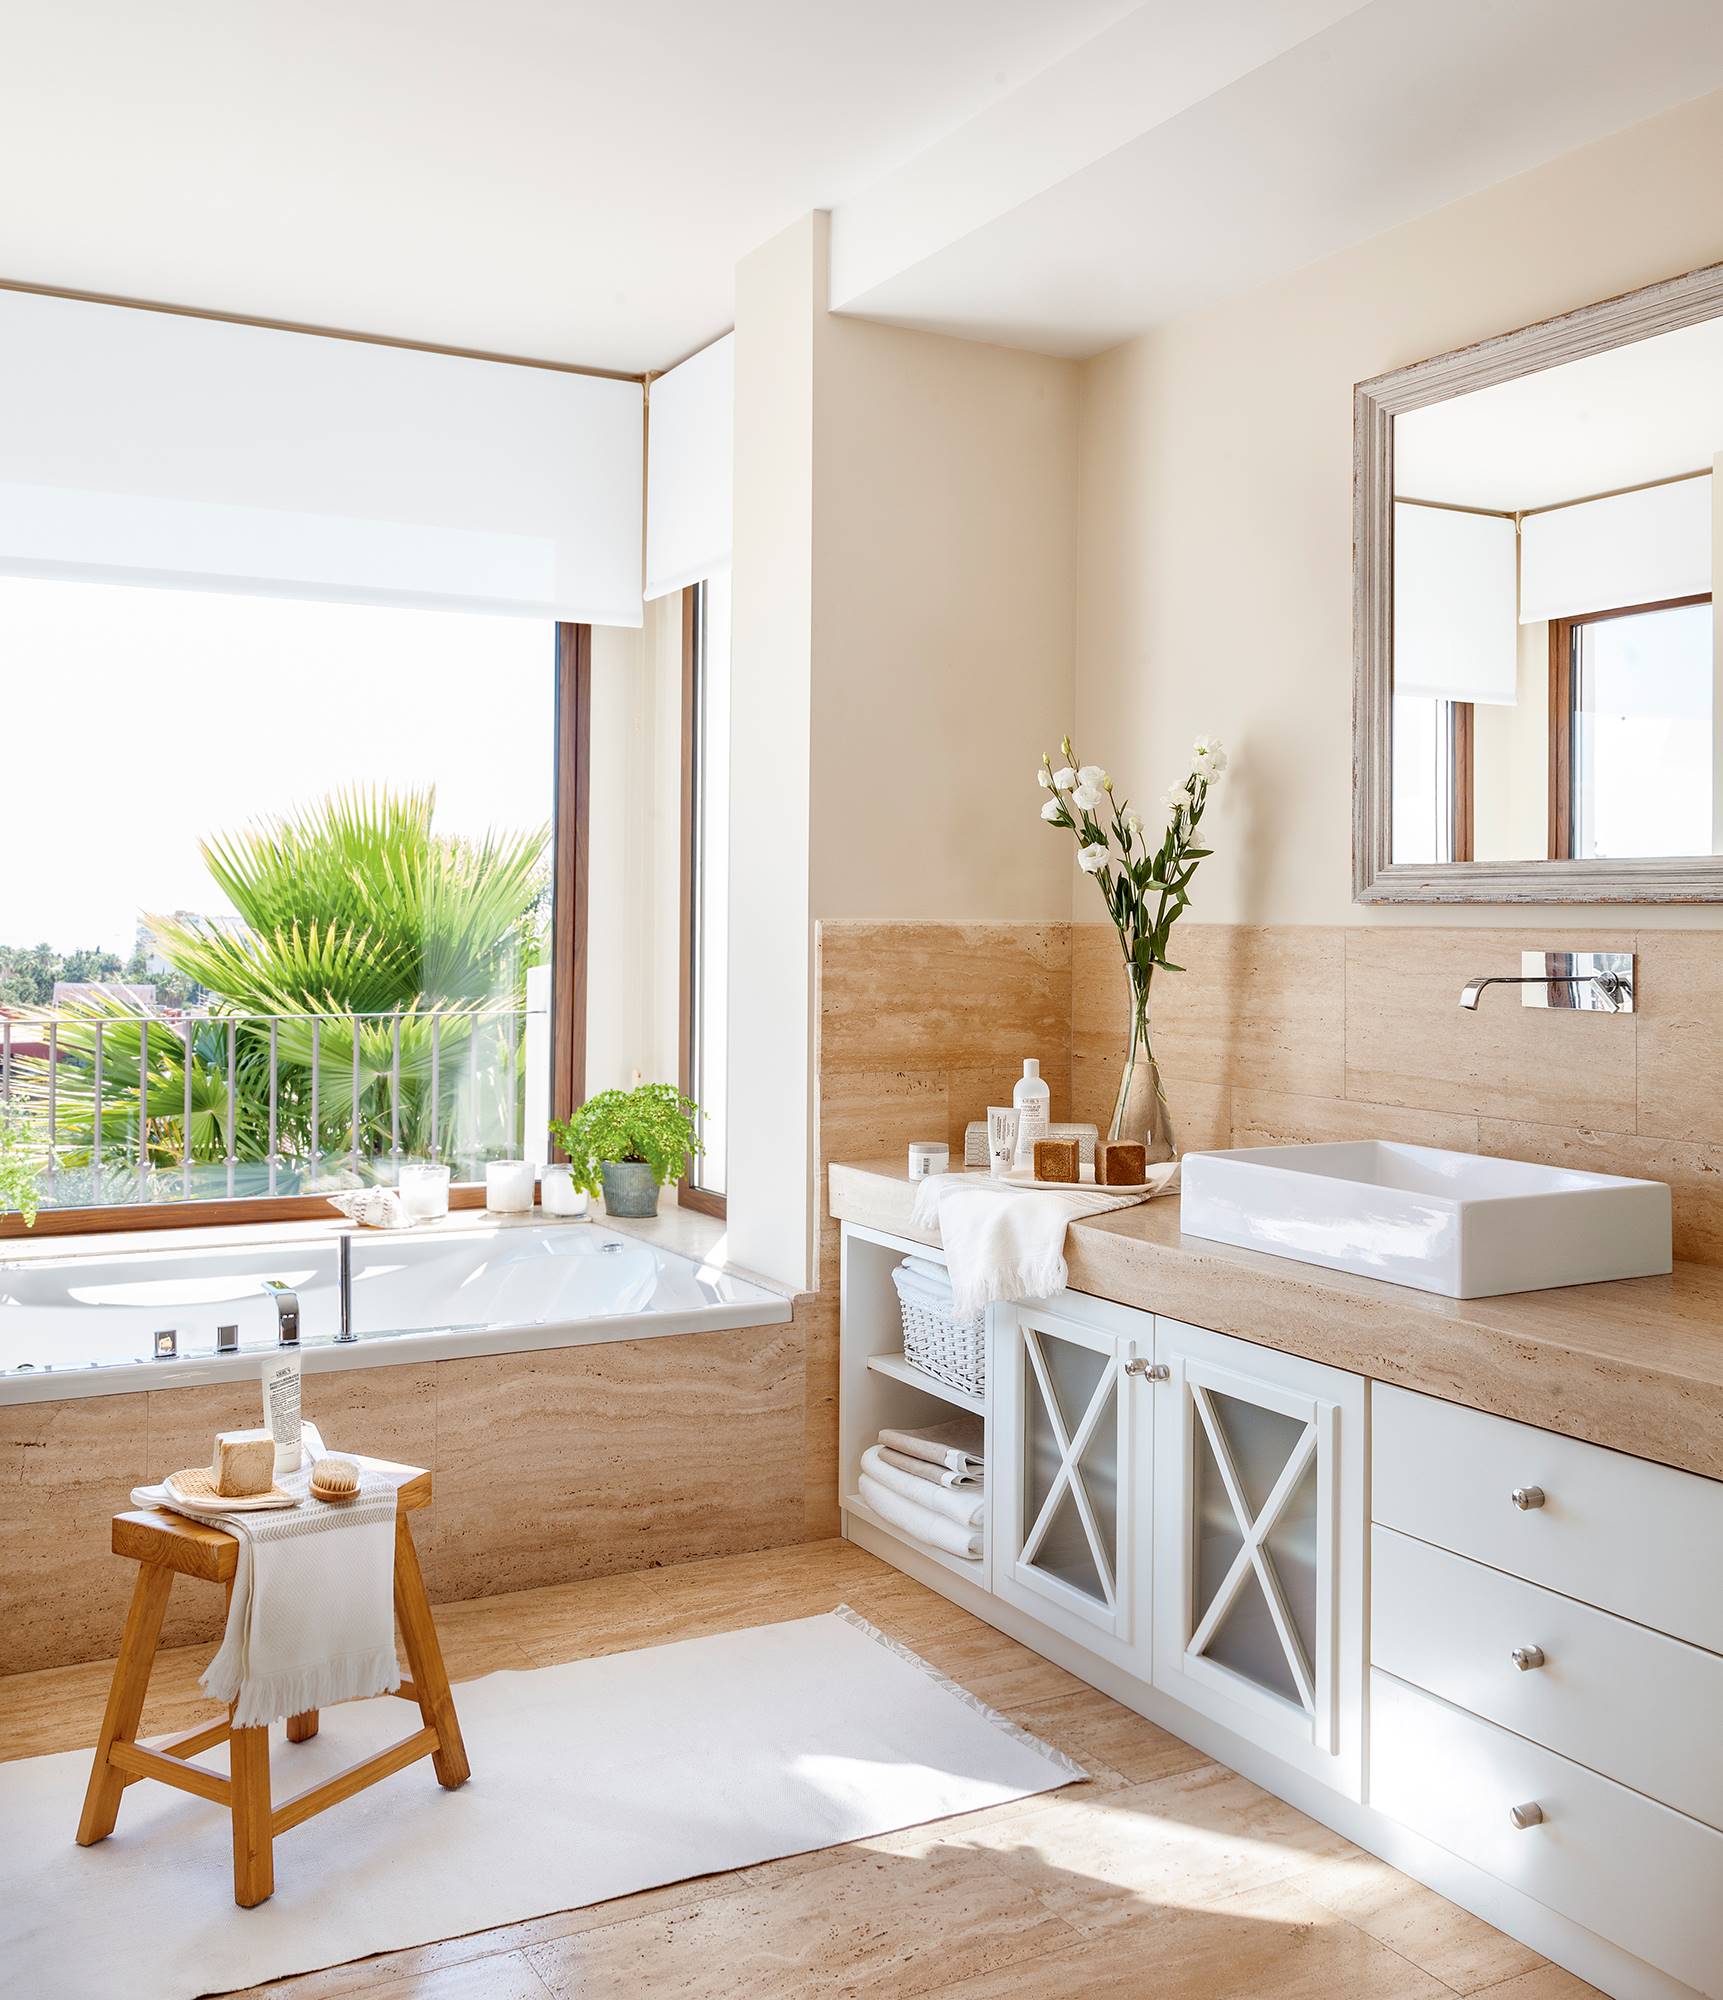 Baño clásico atemporal con mueble con cajones y puertas de aspas y bañera bajo ventana 00411142b